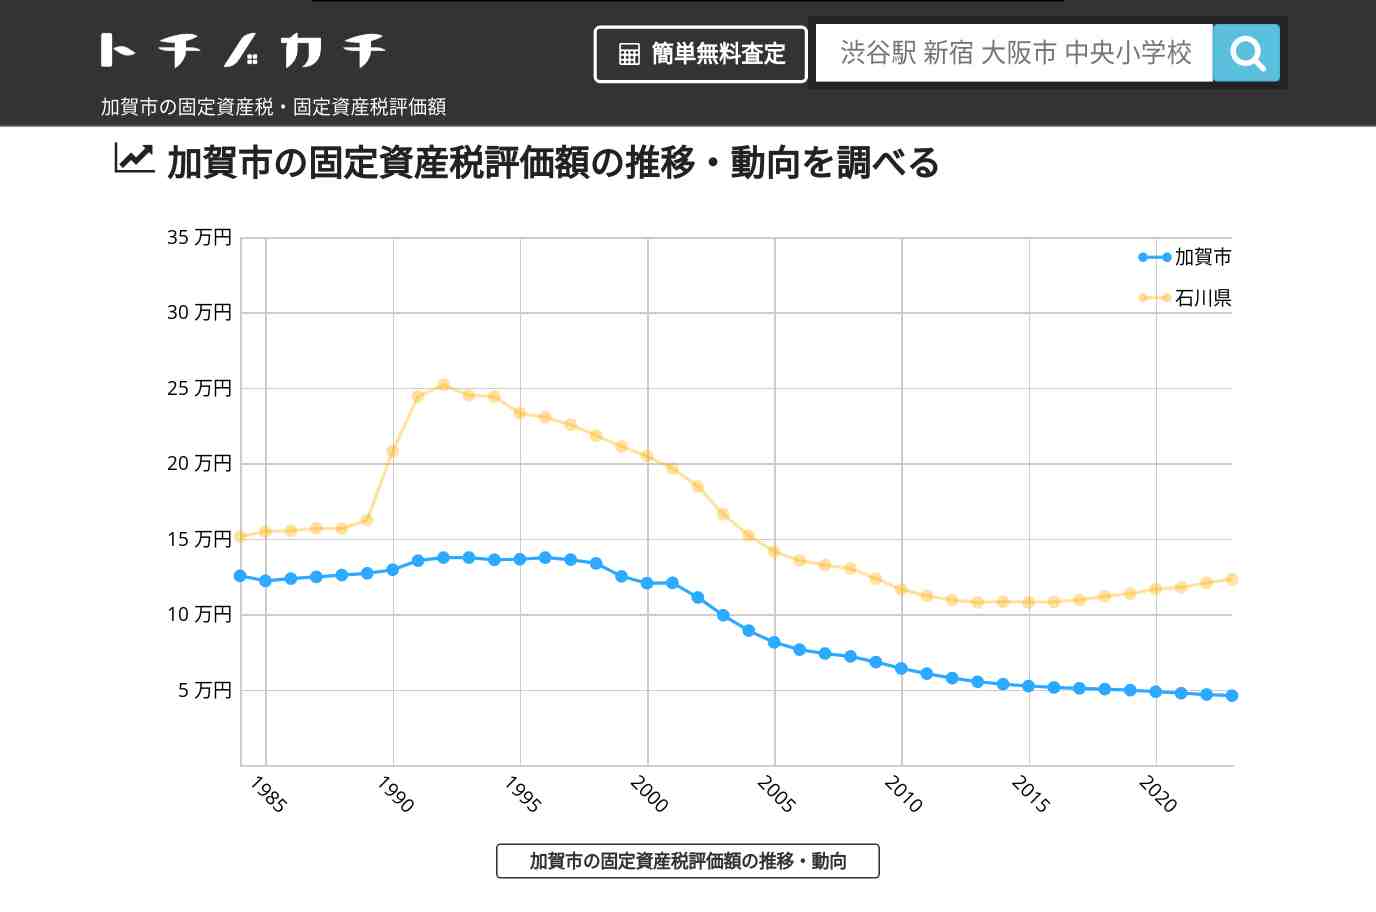 南郷小学校(石川県 加賀市)周辺の固定資産税・固定資産税評価額 | トチノカチ